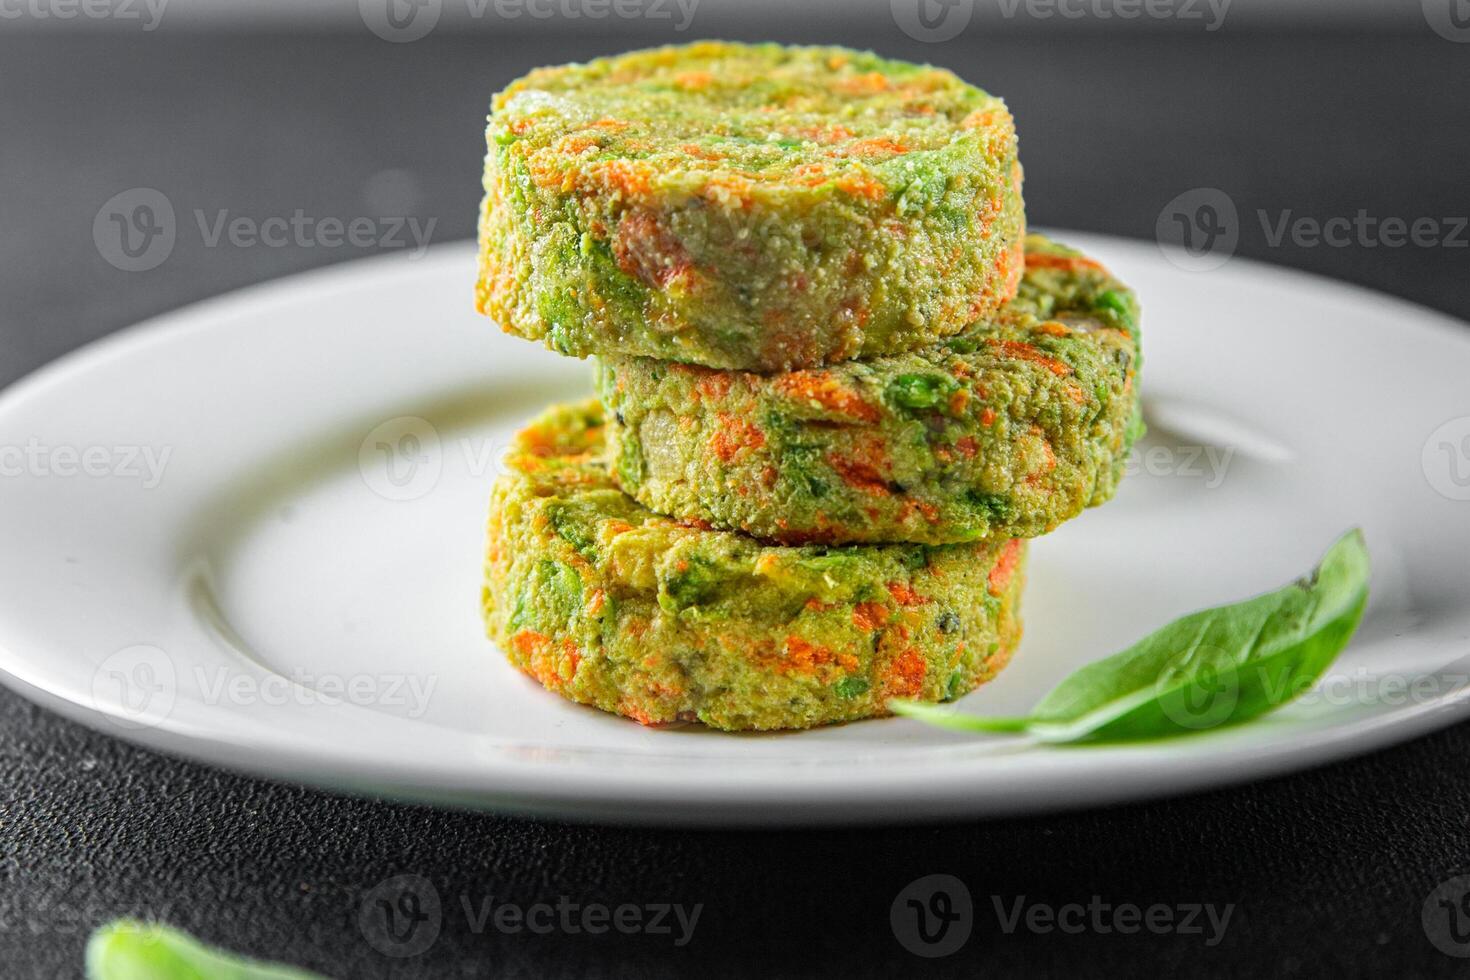 vegetariano cotoletta verdura carota, broccoli, patate fresco vegano cibo gustoso salutare mangiare pasto foto